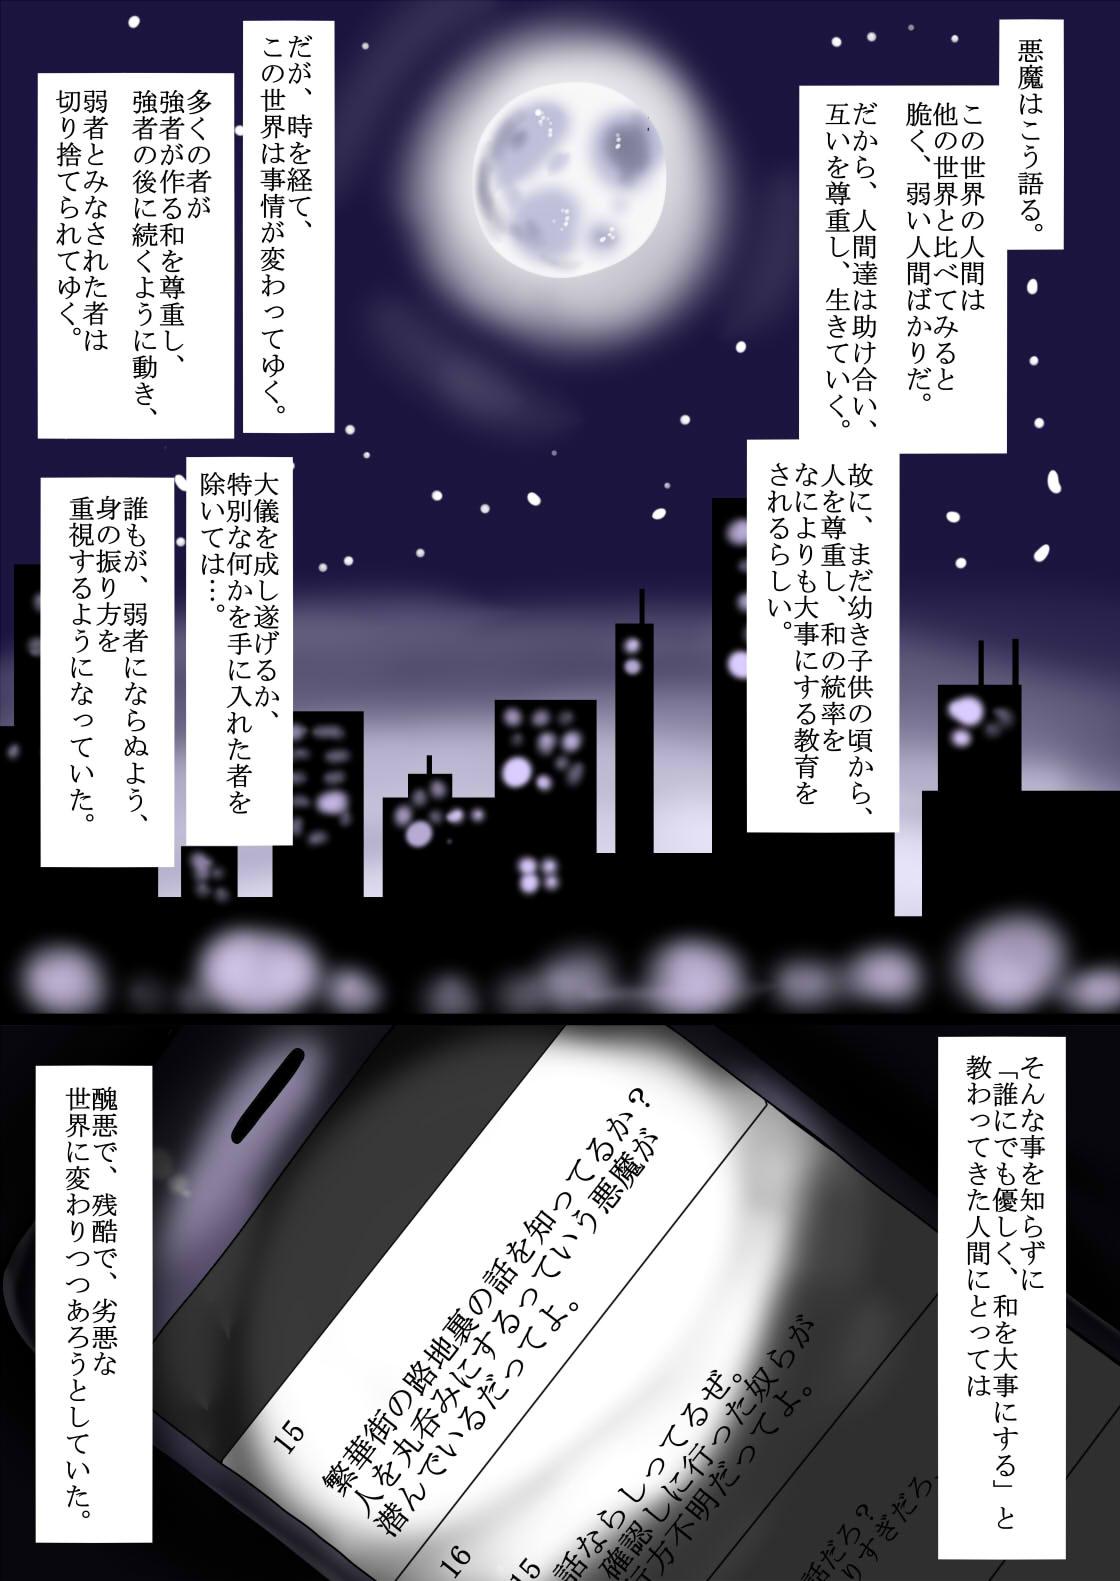 Culazo Kenzoku e no Sentaku Body - Page 2